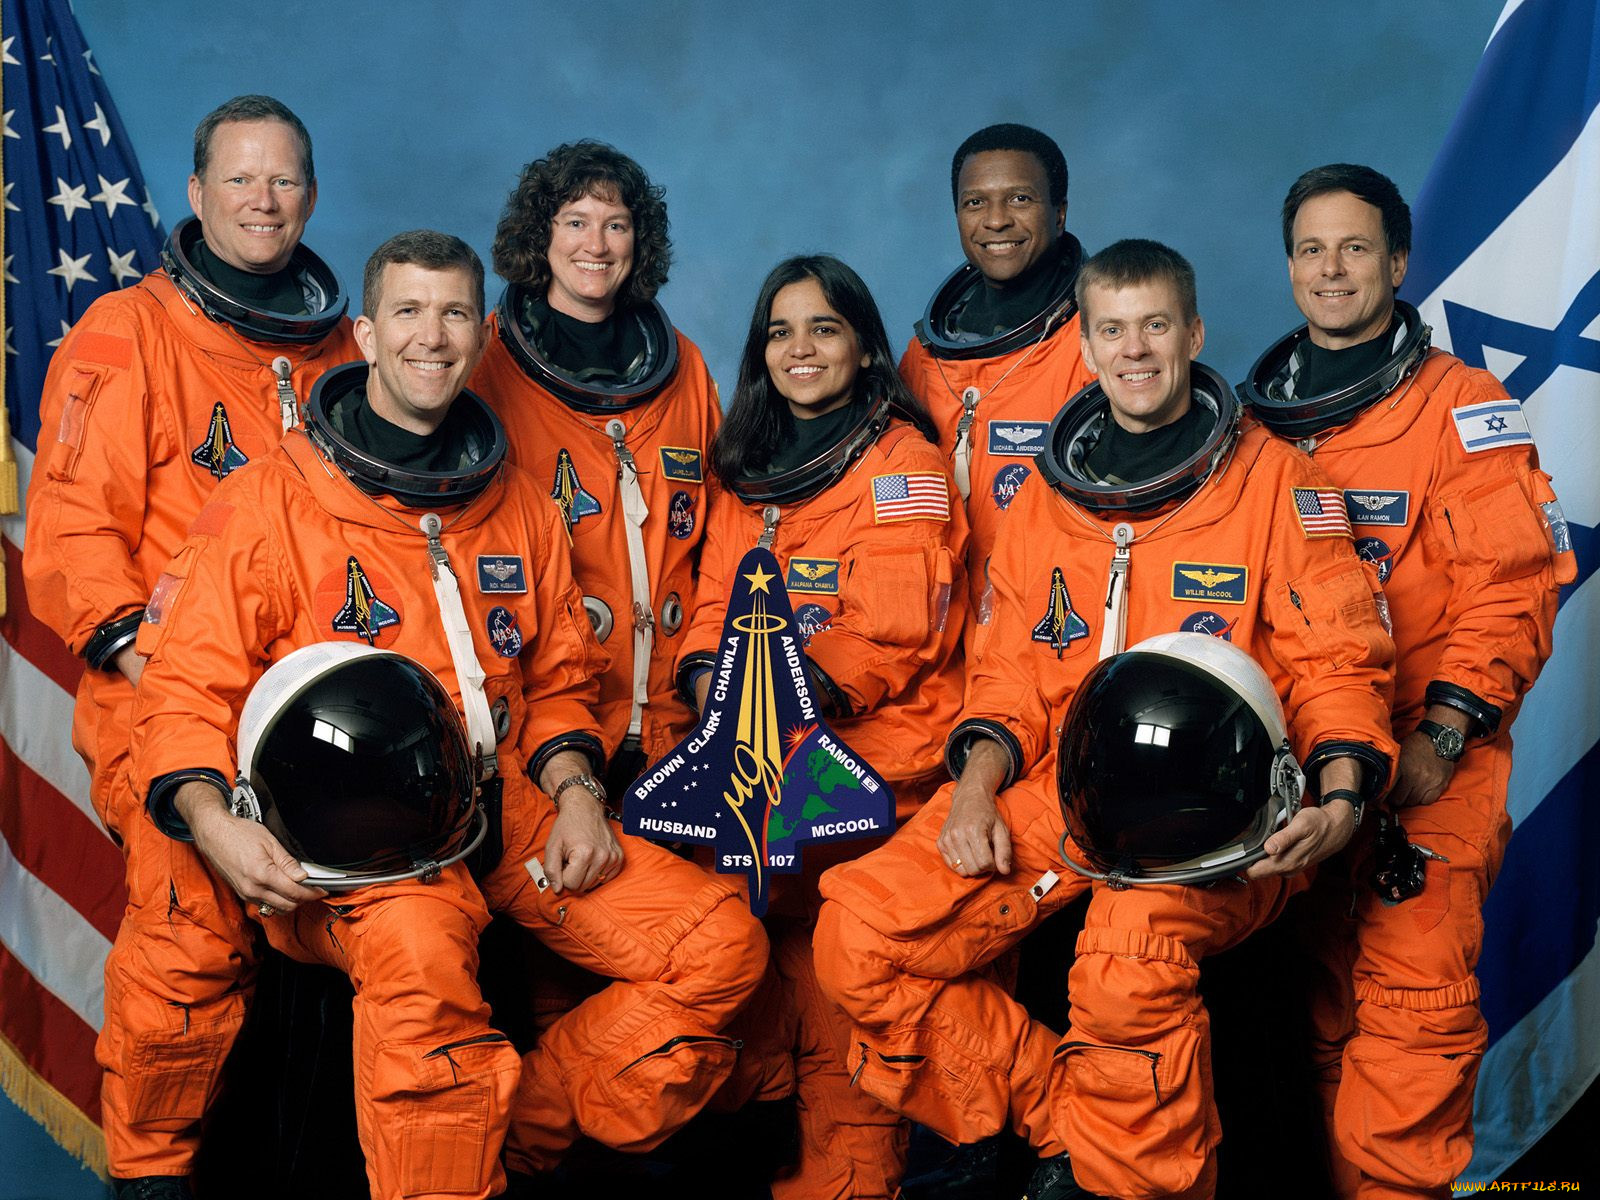 Какие страны вышли в космос. Экипаж Колумбии 2003. Спейс шаттл Колумбия катастрофа. Шаттл Колумбия экипаж. Экипаж шаттла Колумбия 2003.